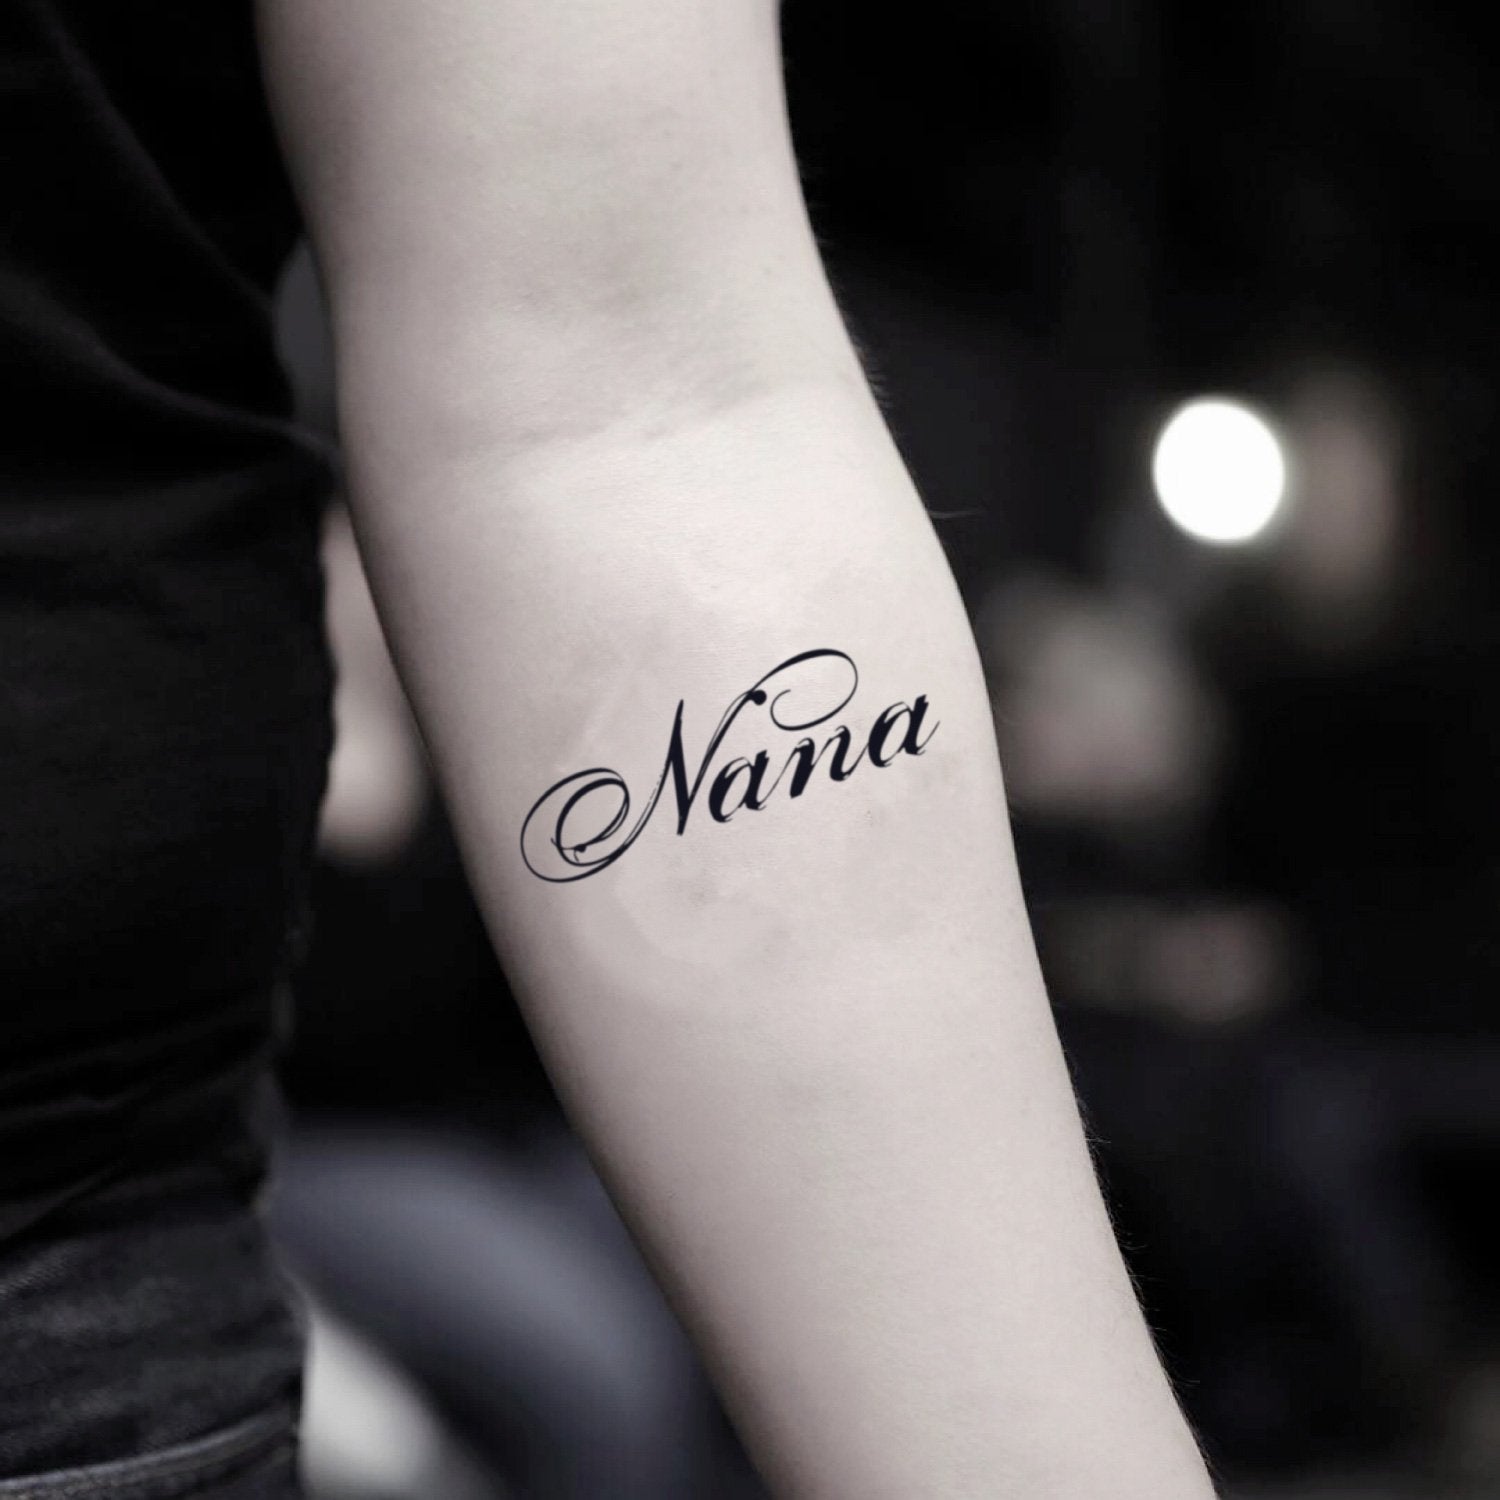 20 Nana ideas  tattoos nana nana tattoo